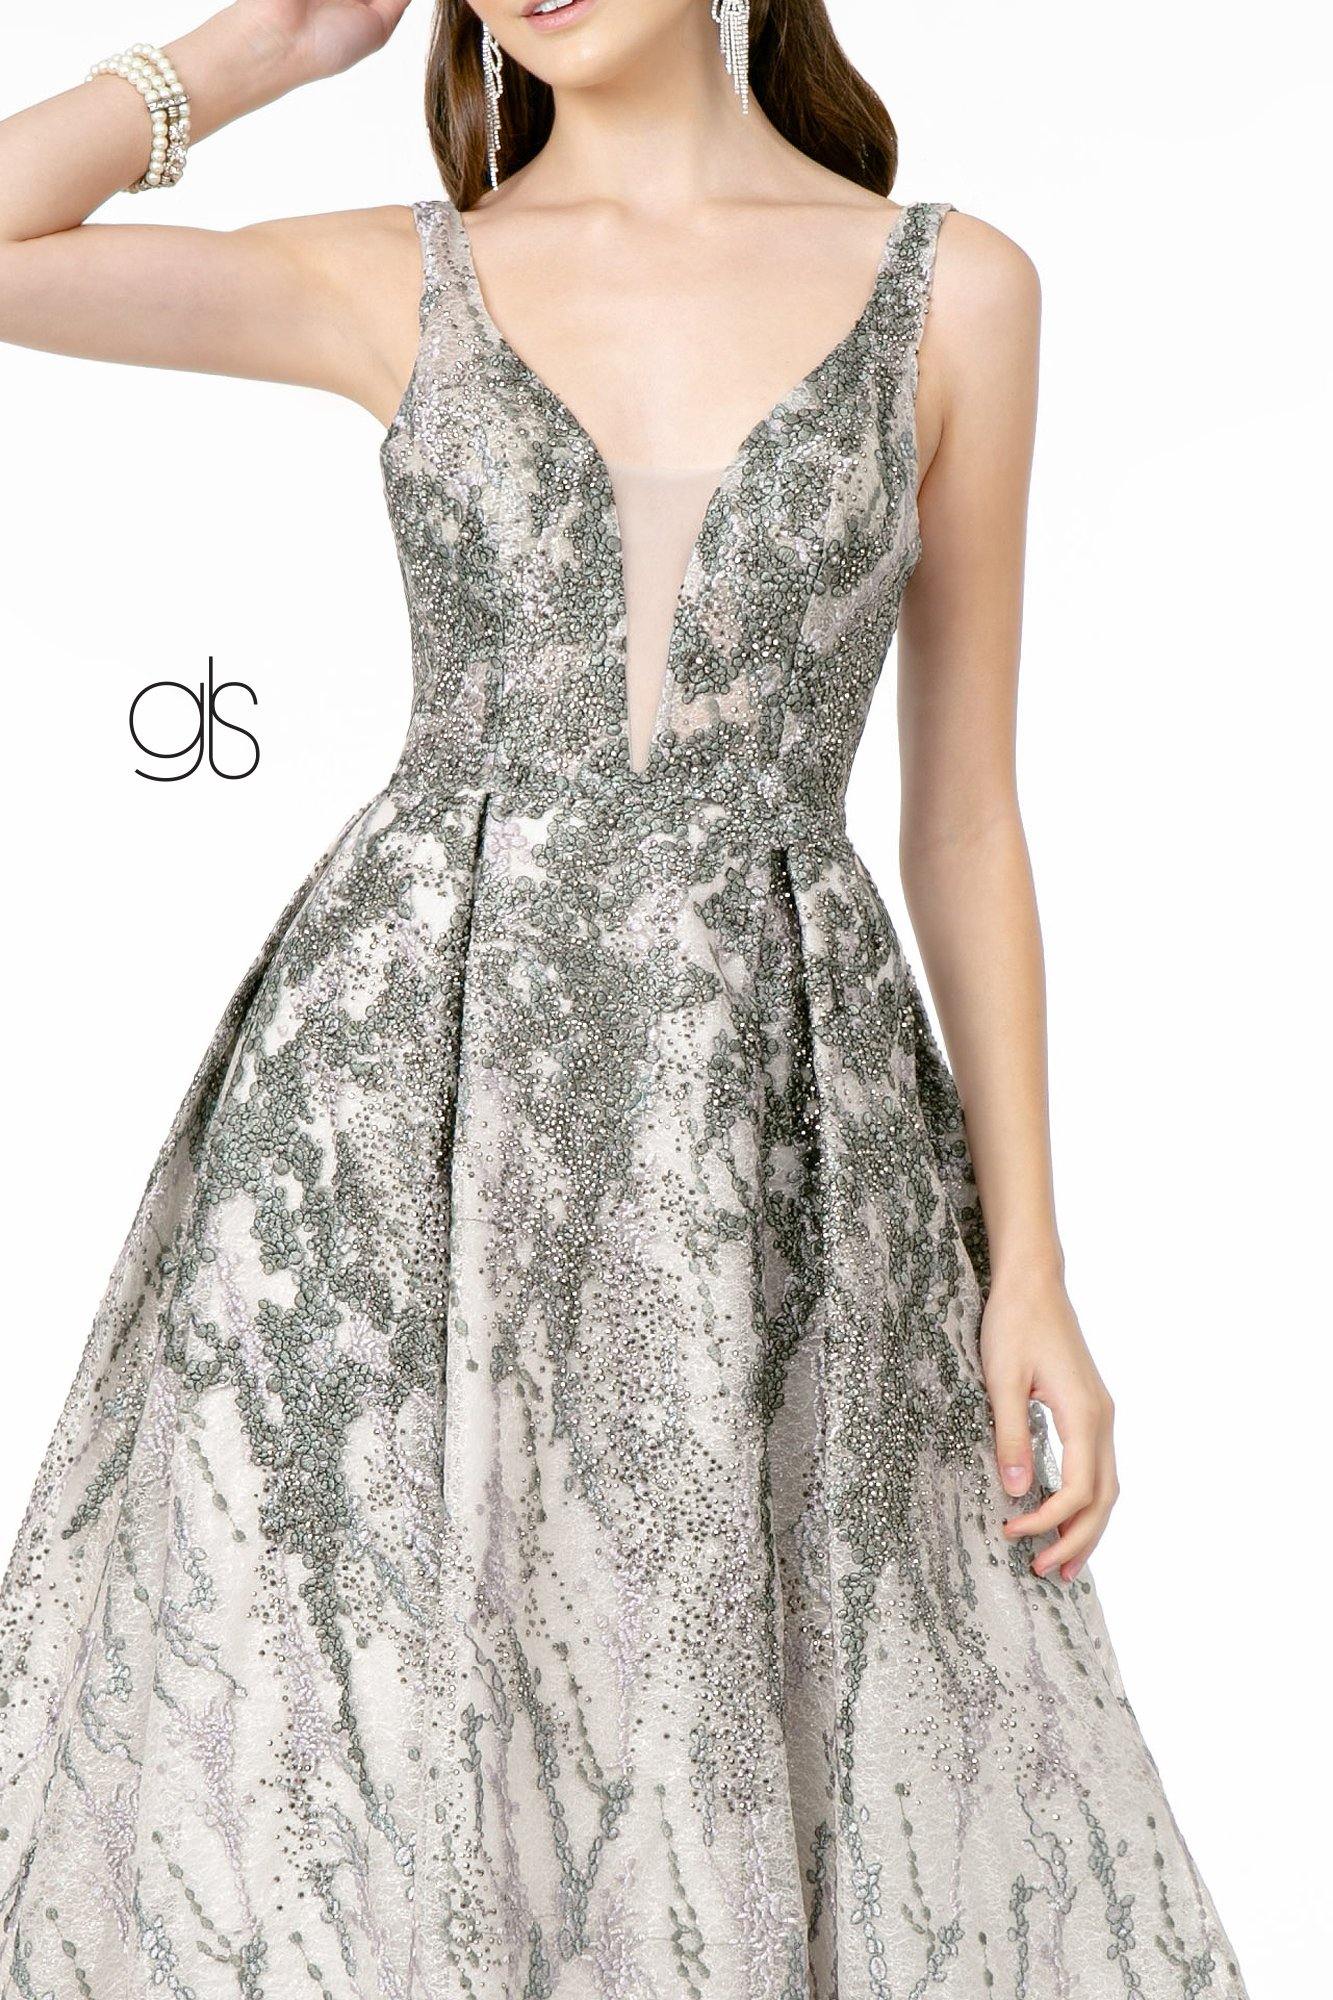 Jewel Embellished Lace Long Prom Dress - The Dress Outlet Elizabeth K